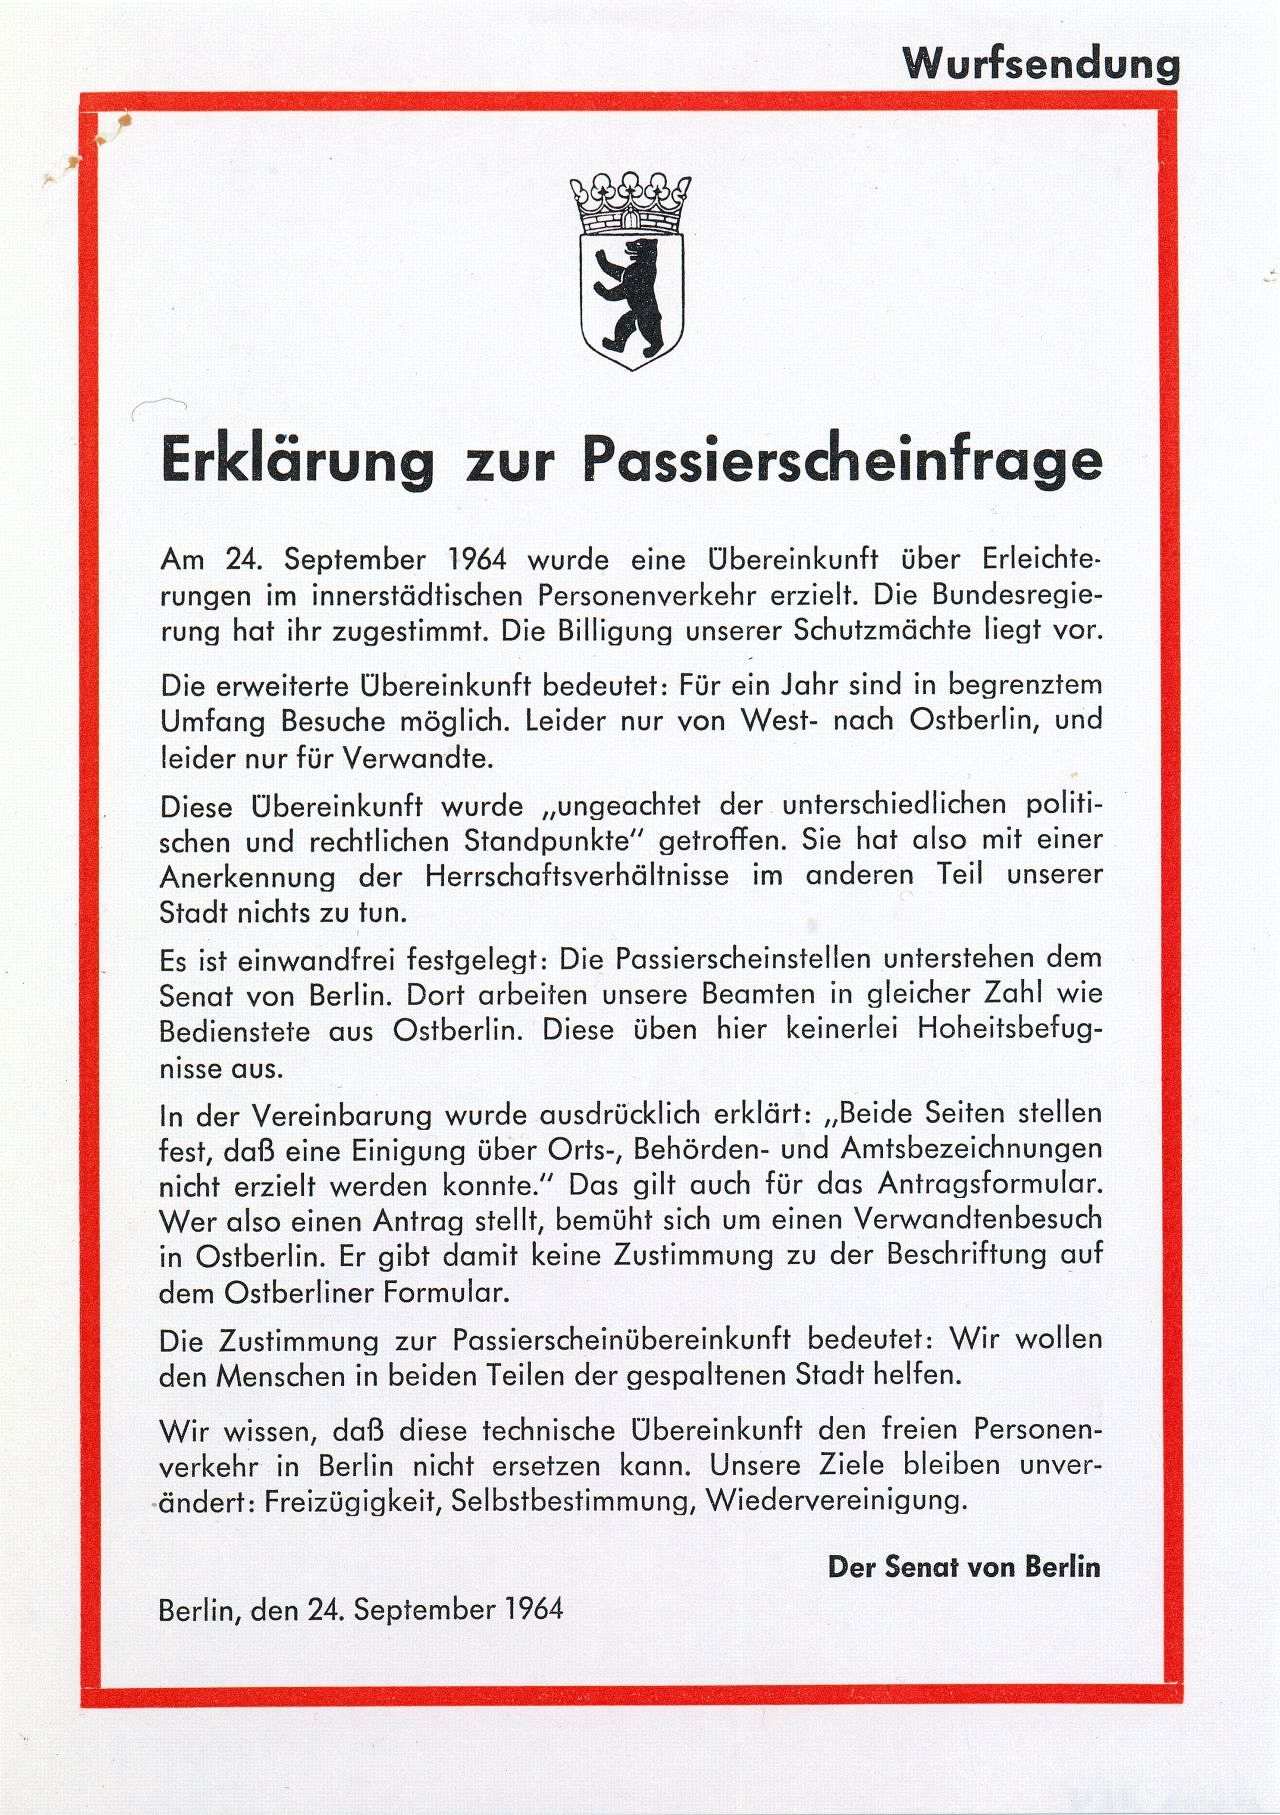 Einseitig bedrucktes DIN-A5-großes Blatt, rote Umrahmung; Text oben rechts: 'Wurfsendung'; Berliner Wappen, Überschrift: 'Erklärung zur Passierscheinfrage', drunter die 'Erklärung', unten rechts 'Der Senat von Berlin', unten links Ort- und Datumsangabe.